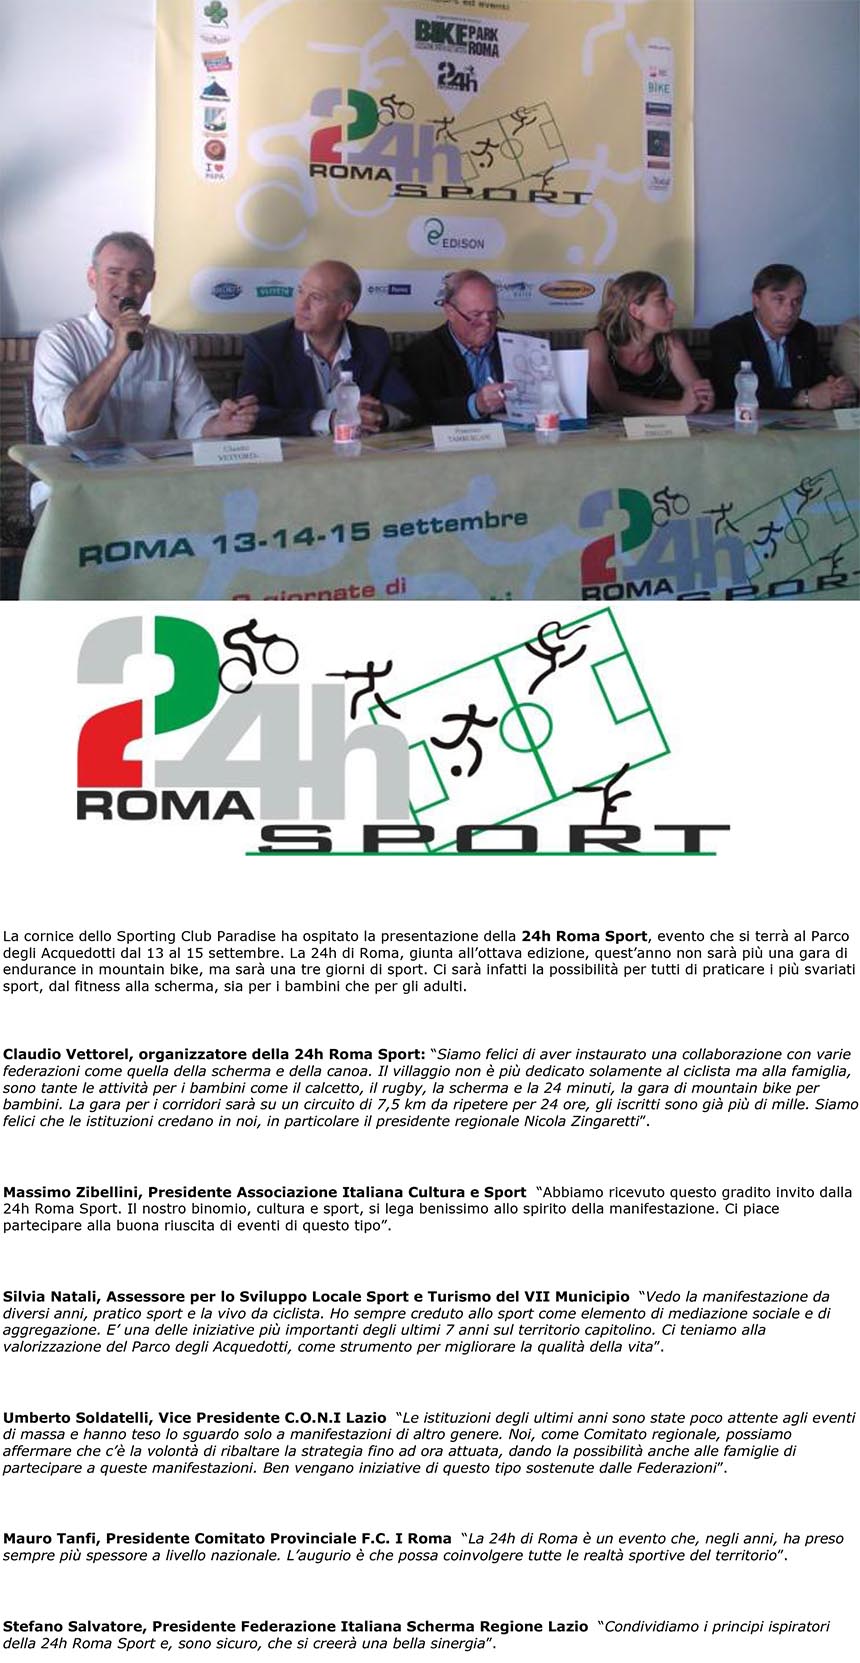 roma 24 ore sport